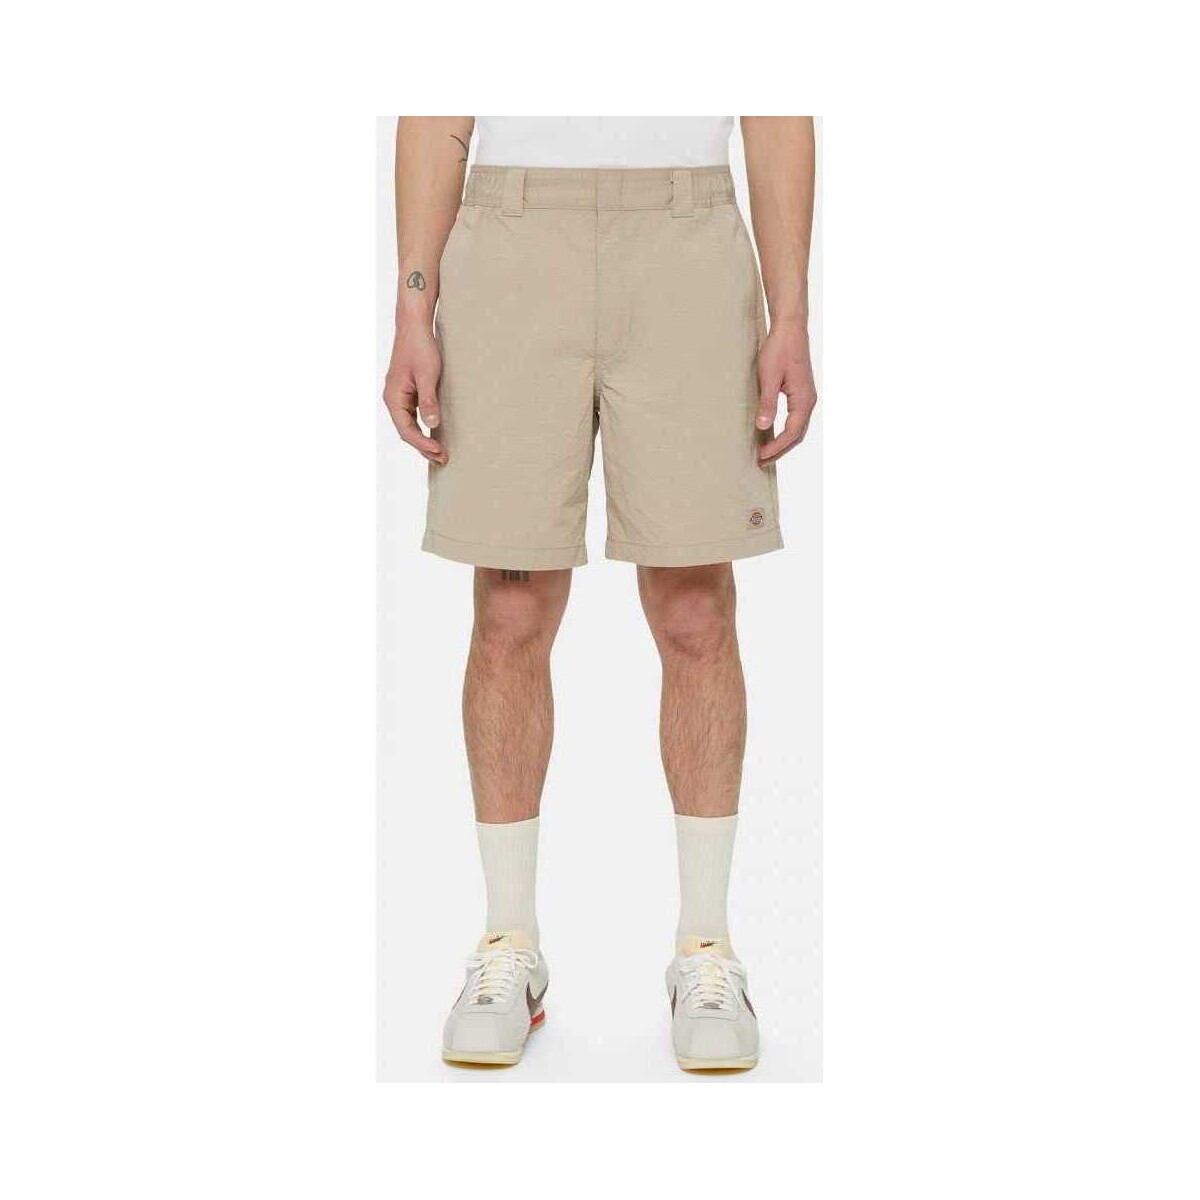 Vêtements Homme Shorts / Bermudas Dickies Fincastle short Beige